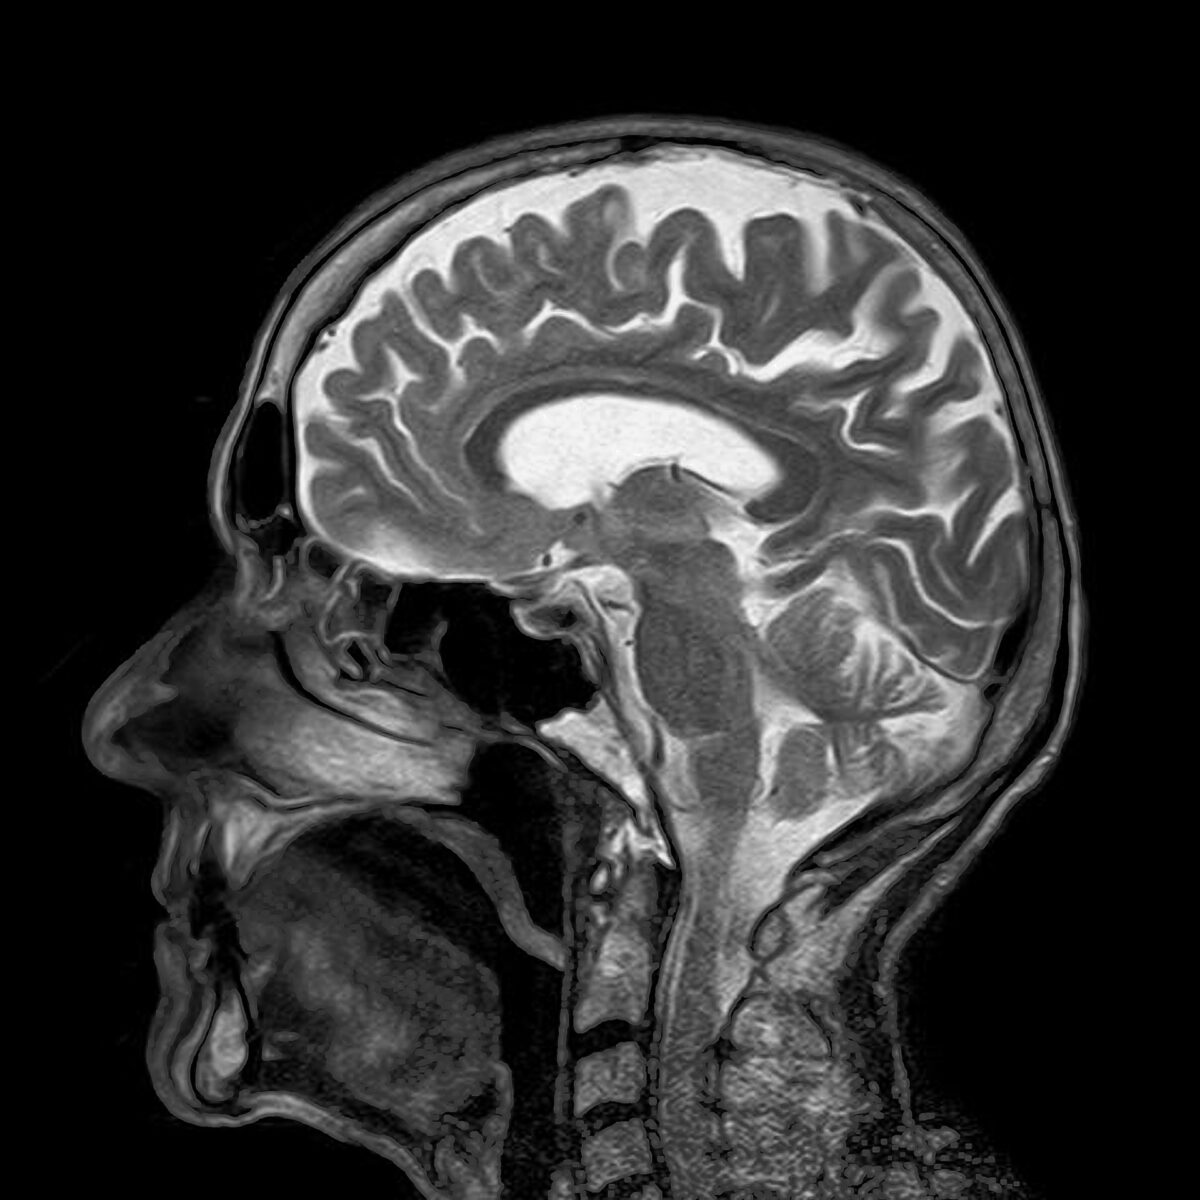 MRI scan of human head